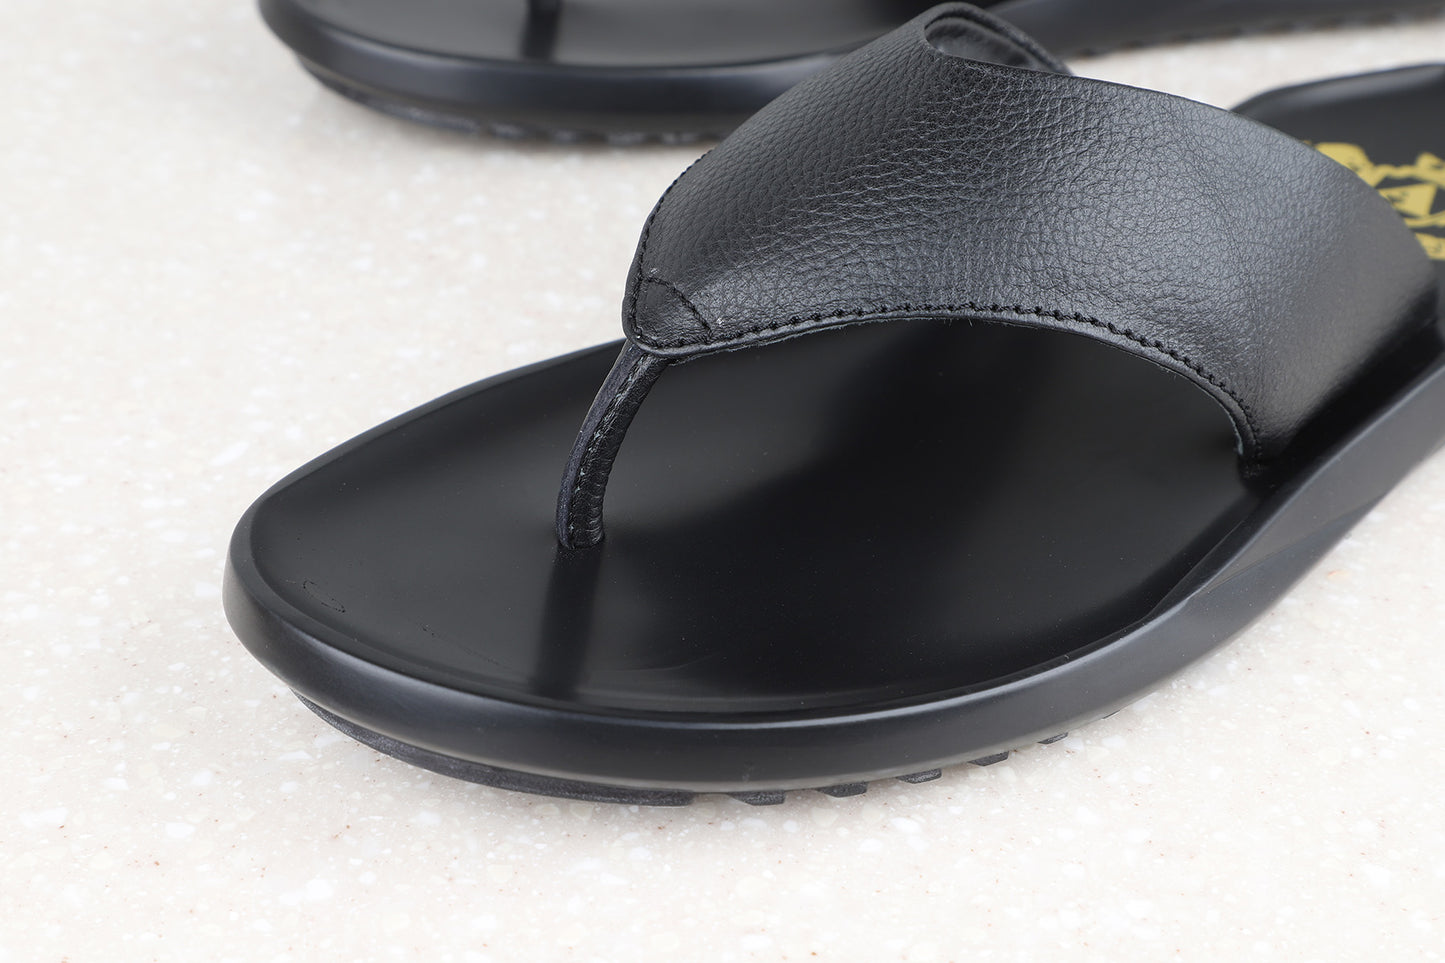 Atesber T-Strap Sandal For Men